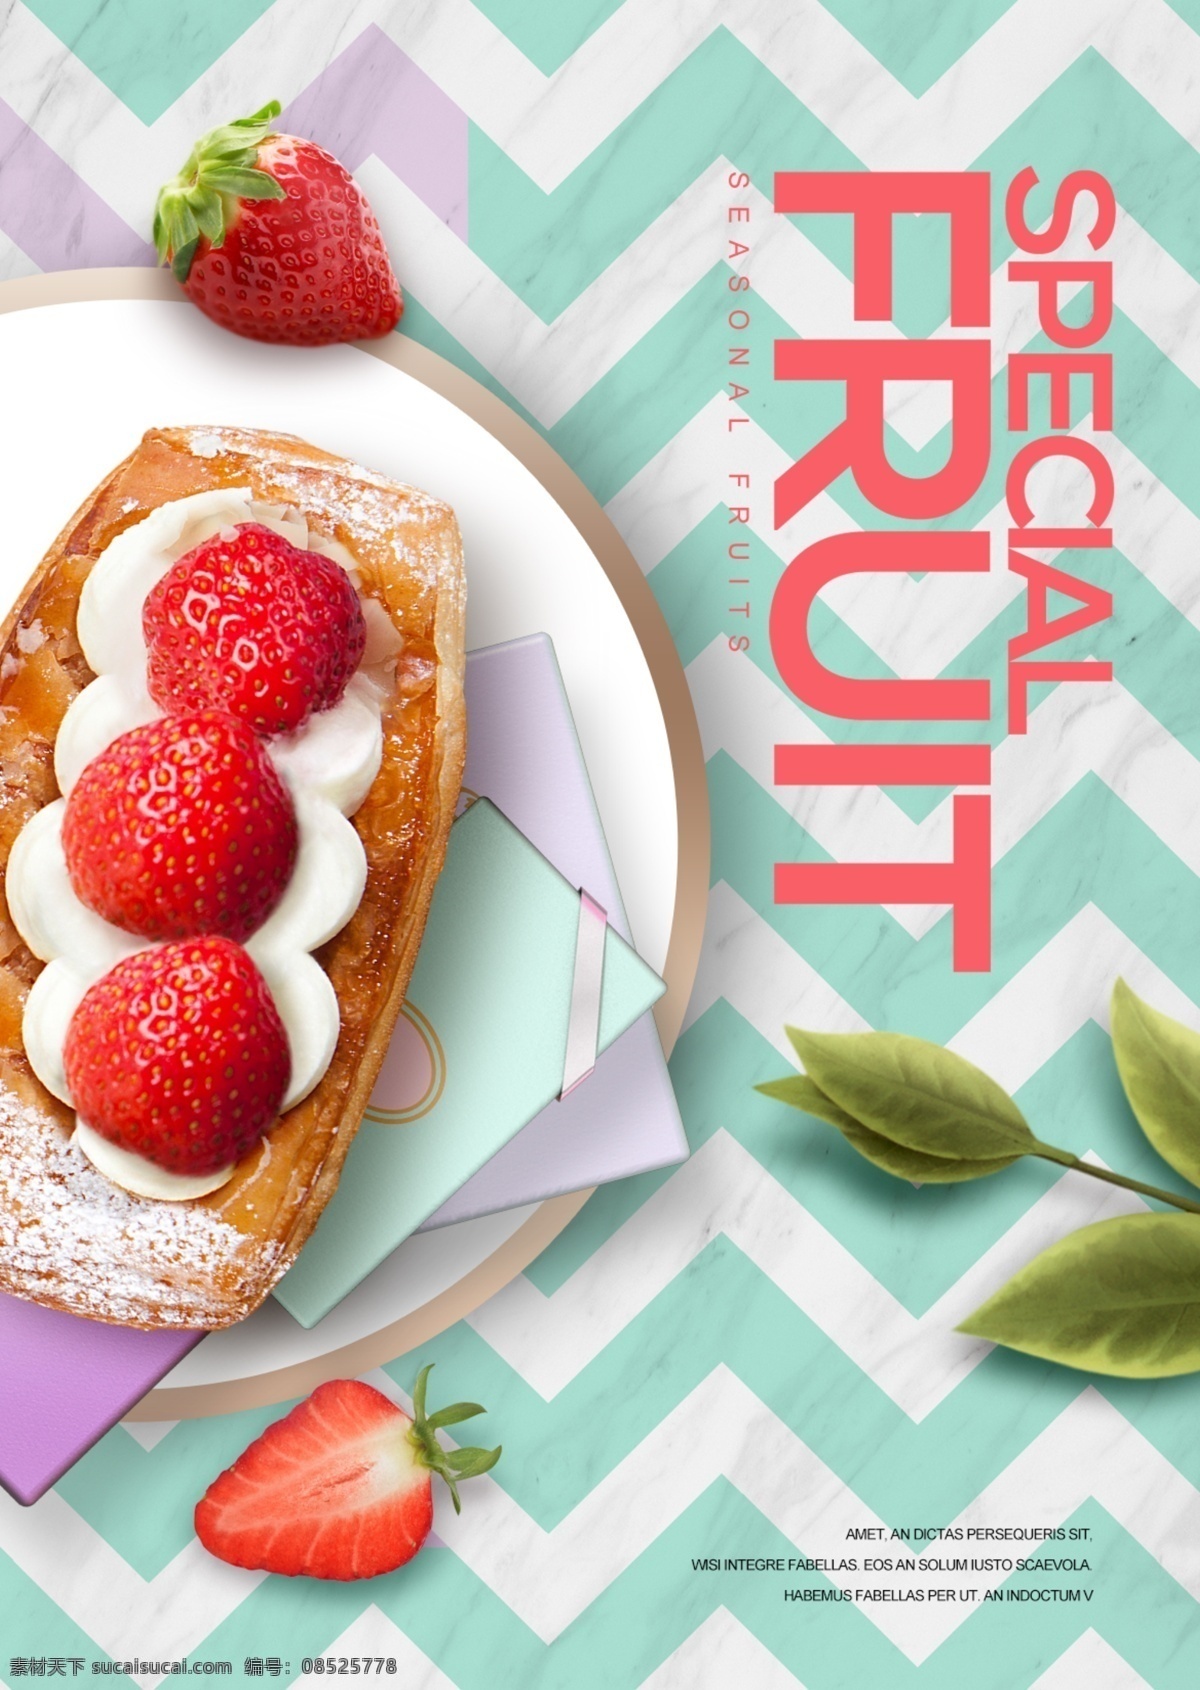 绿色 现代 时尚 水果 甜食 食品 宣传海报 简单 草莓 n 植物 自然 清臣 蛋糕 时装 海报 宣传